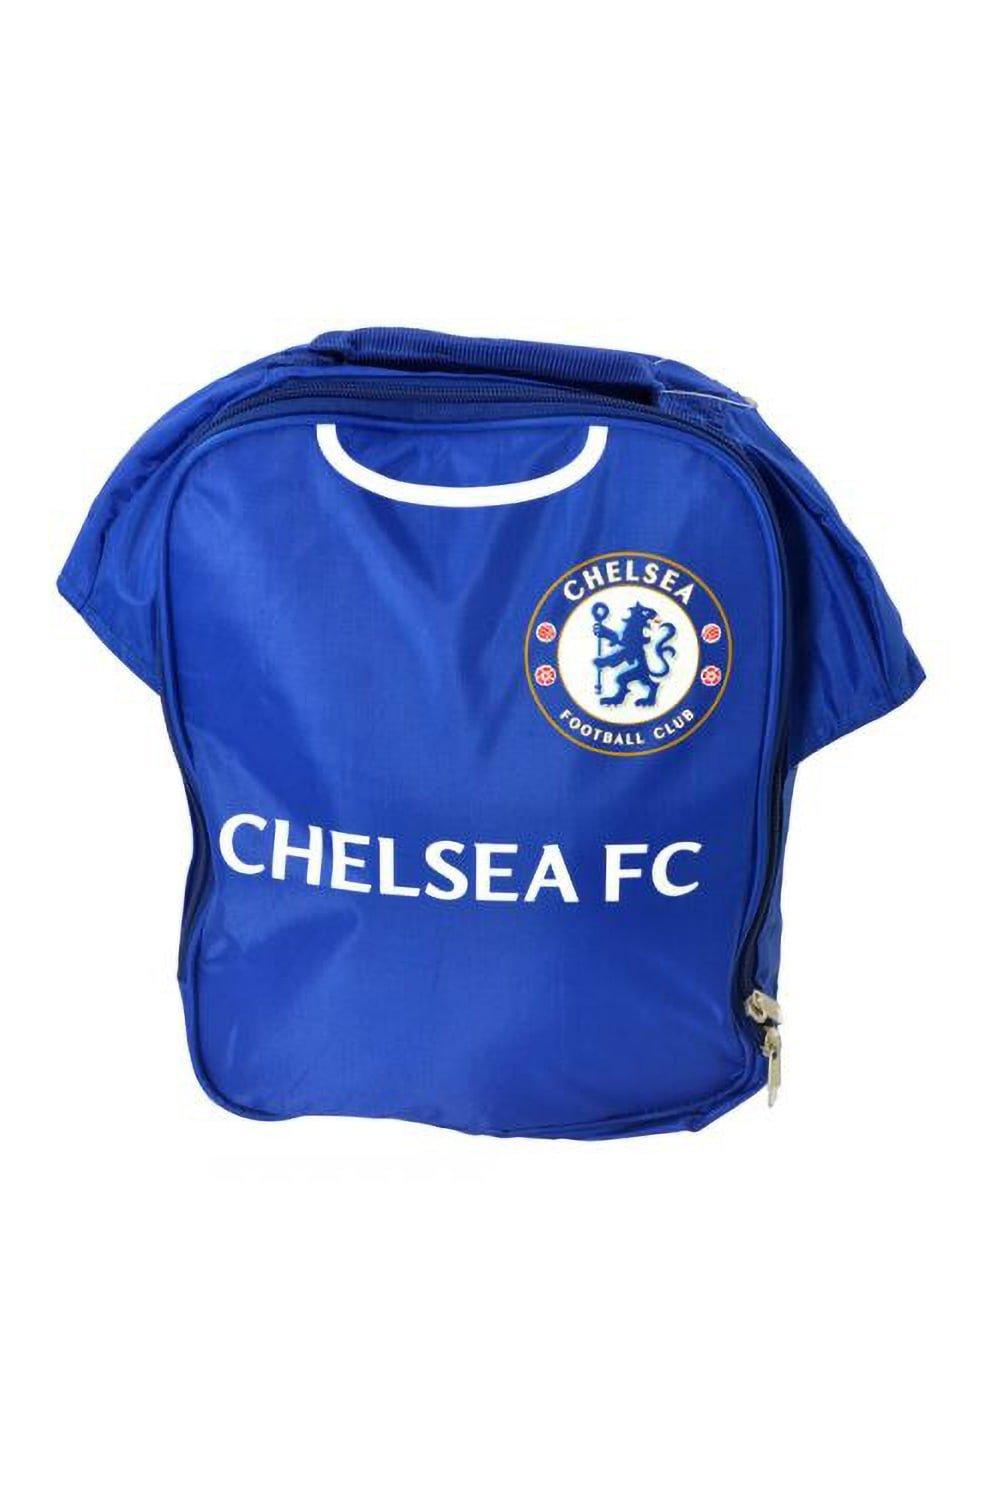 Официальная сумка для обеда футбольной формы Chelsea FC, синий